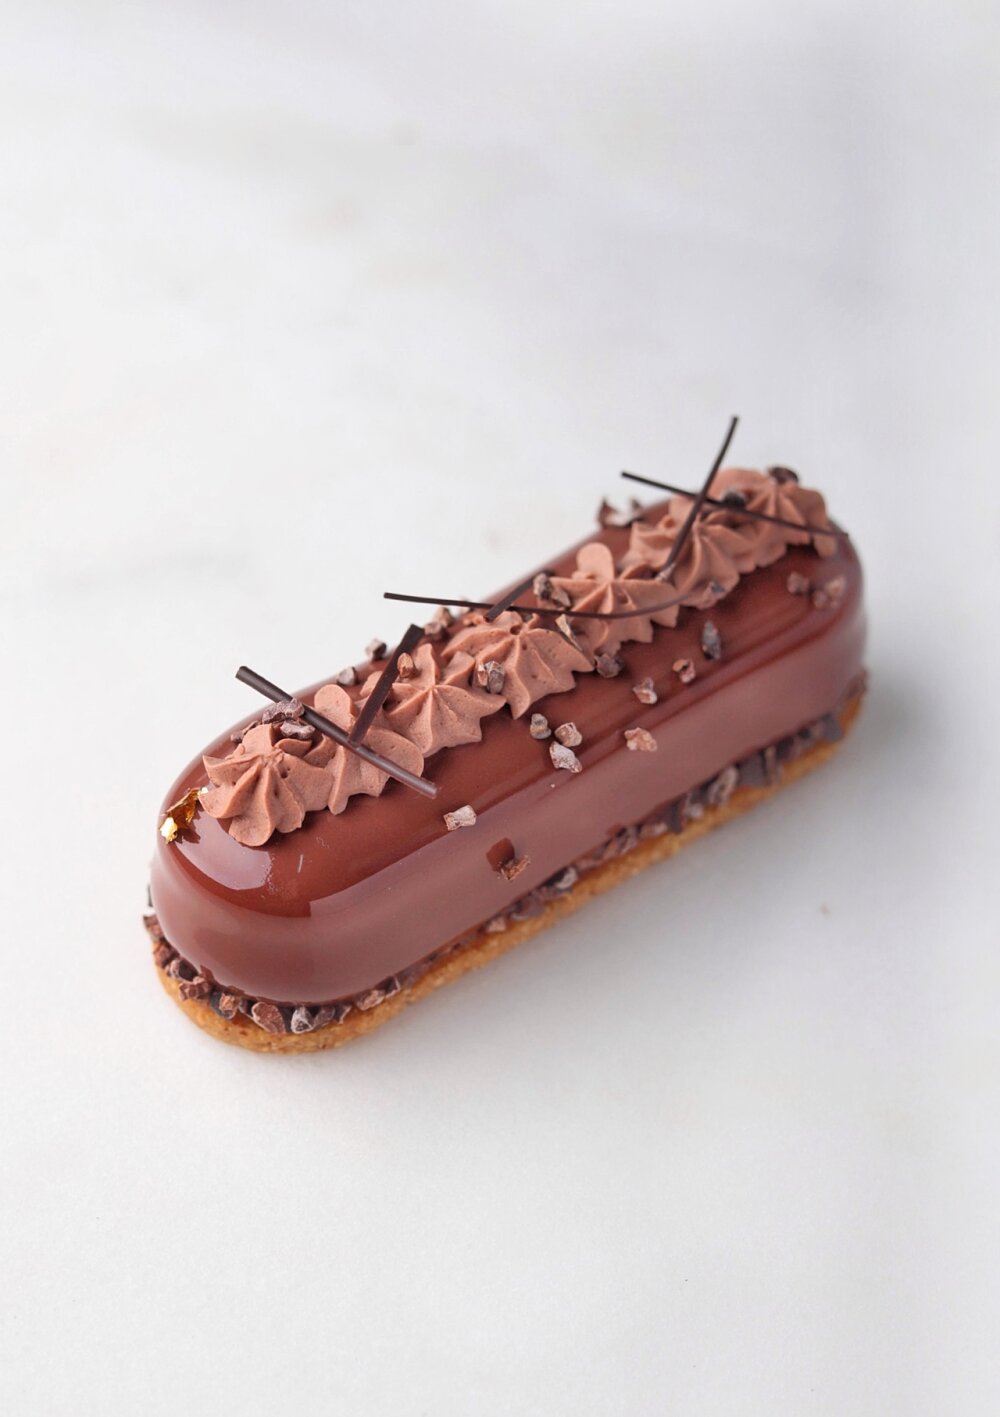 Бельгийский шоколадный десерт